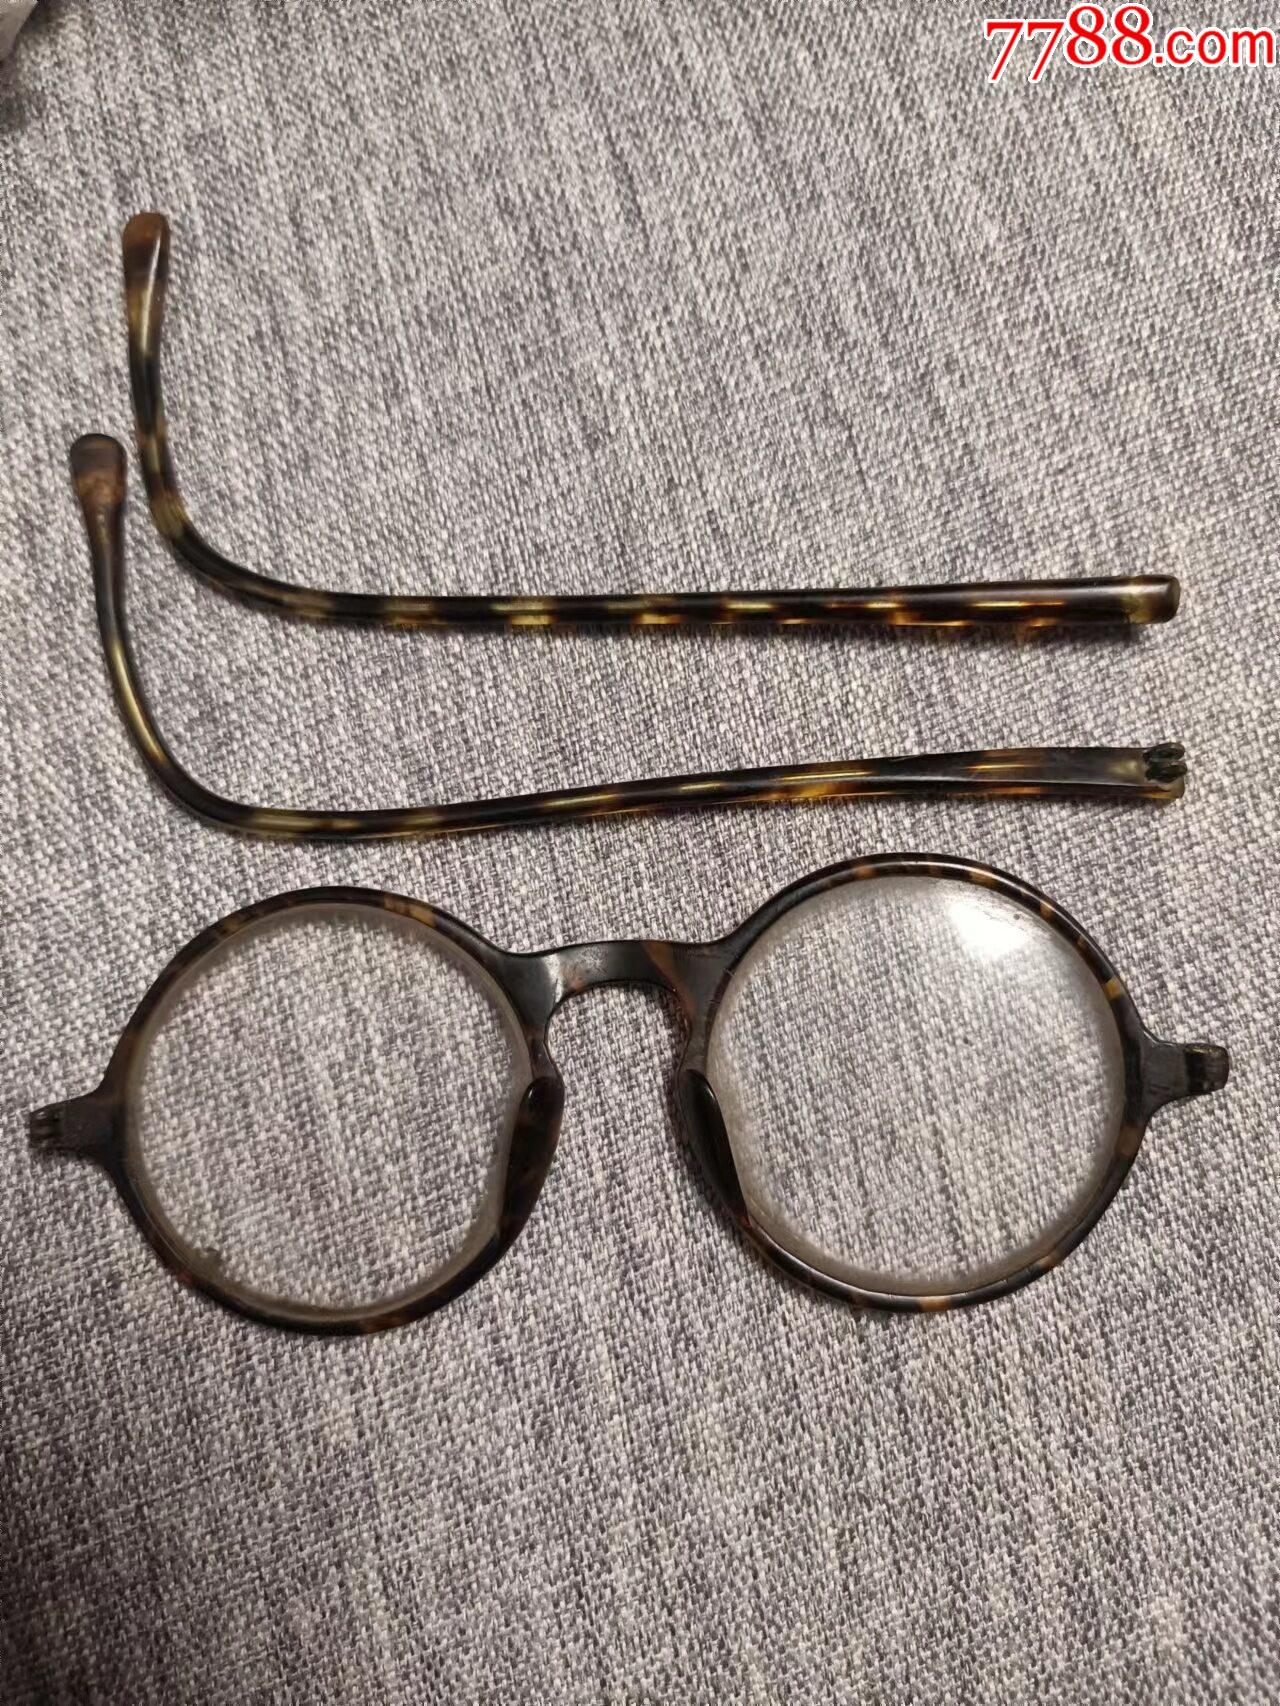 早期老眼镜芦花老古董眼镜配件不是一套